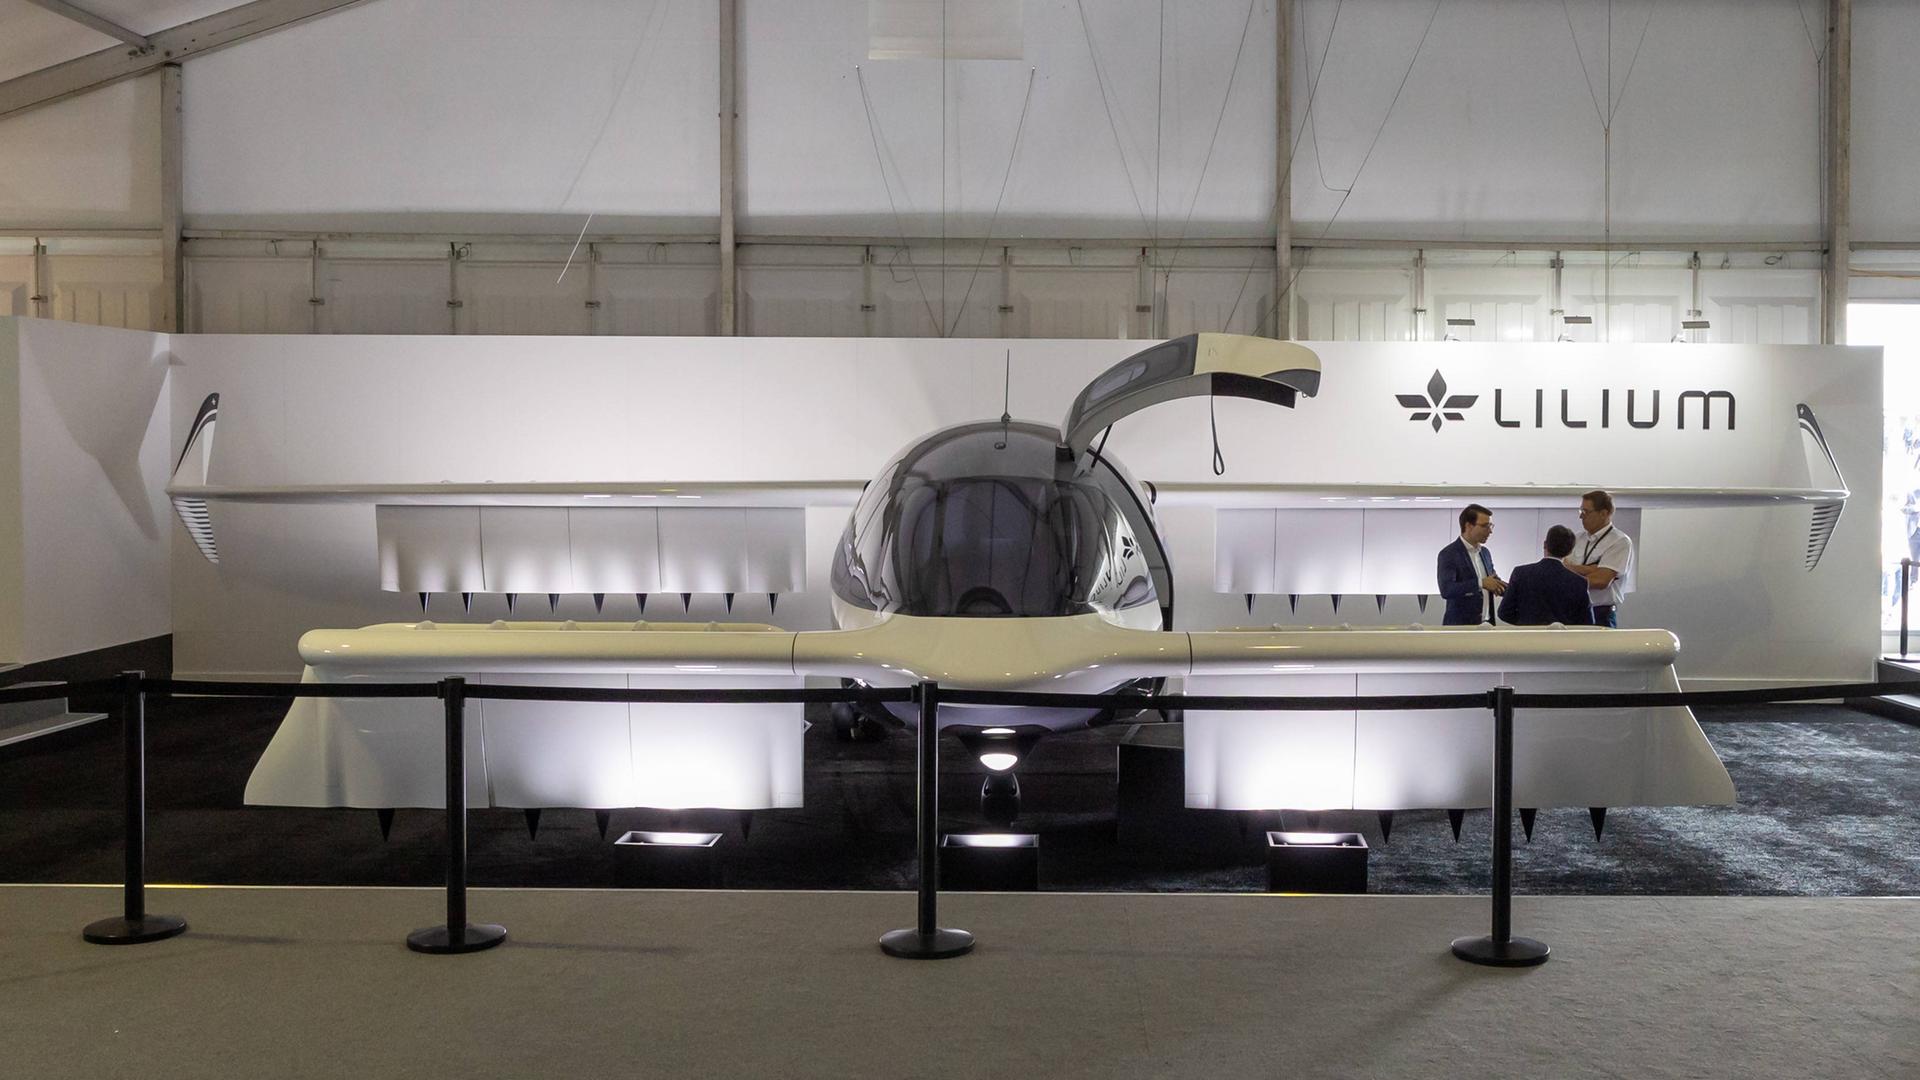 Auf der Internationale Luft- und Raumfahrtausstellung ist der Lilium-Jet zu sehen. Dahinter der Schriftzug des Unternehmens.